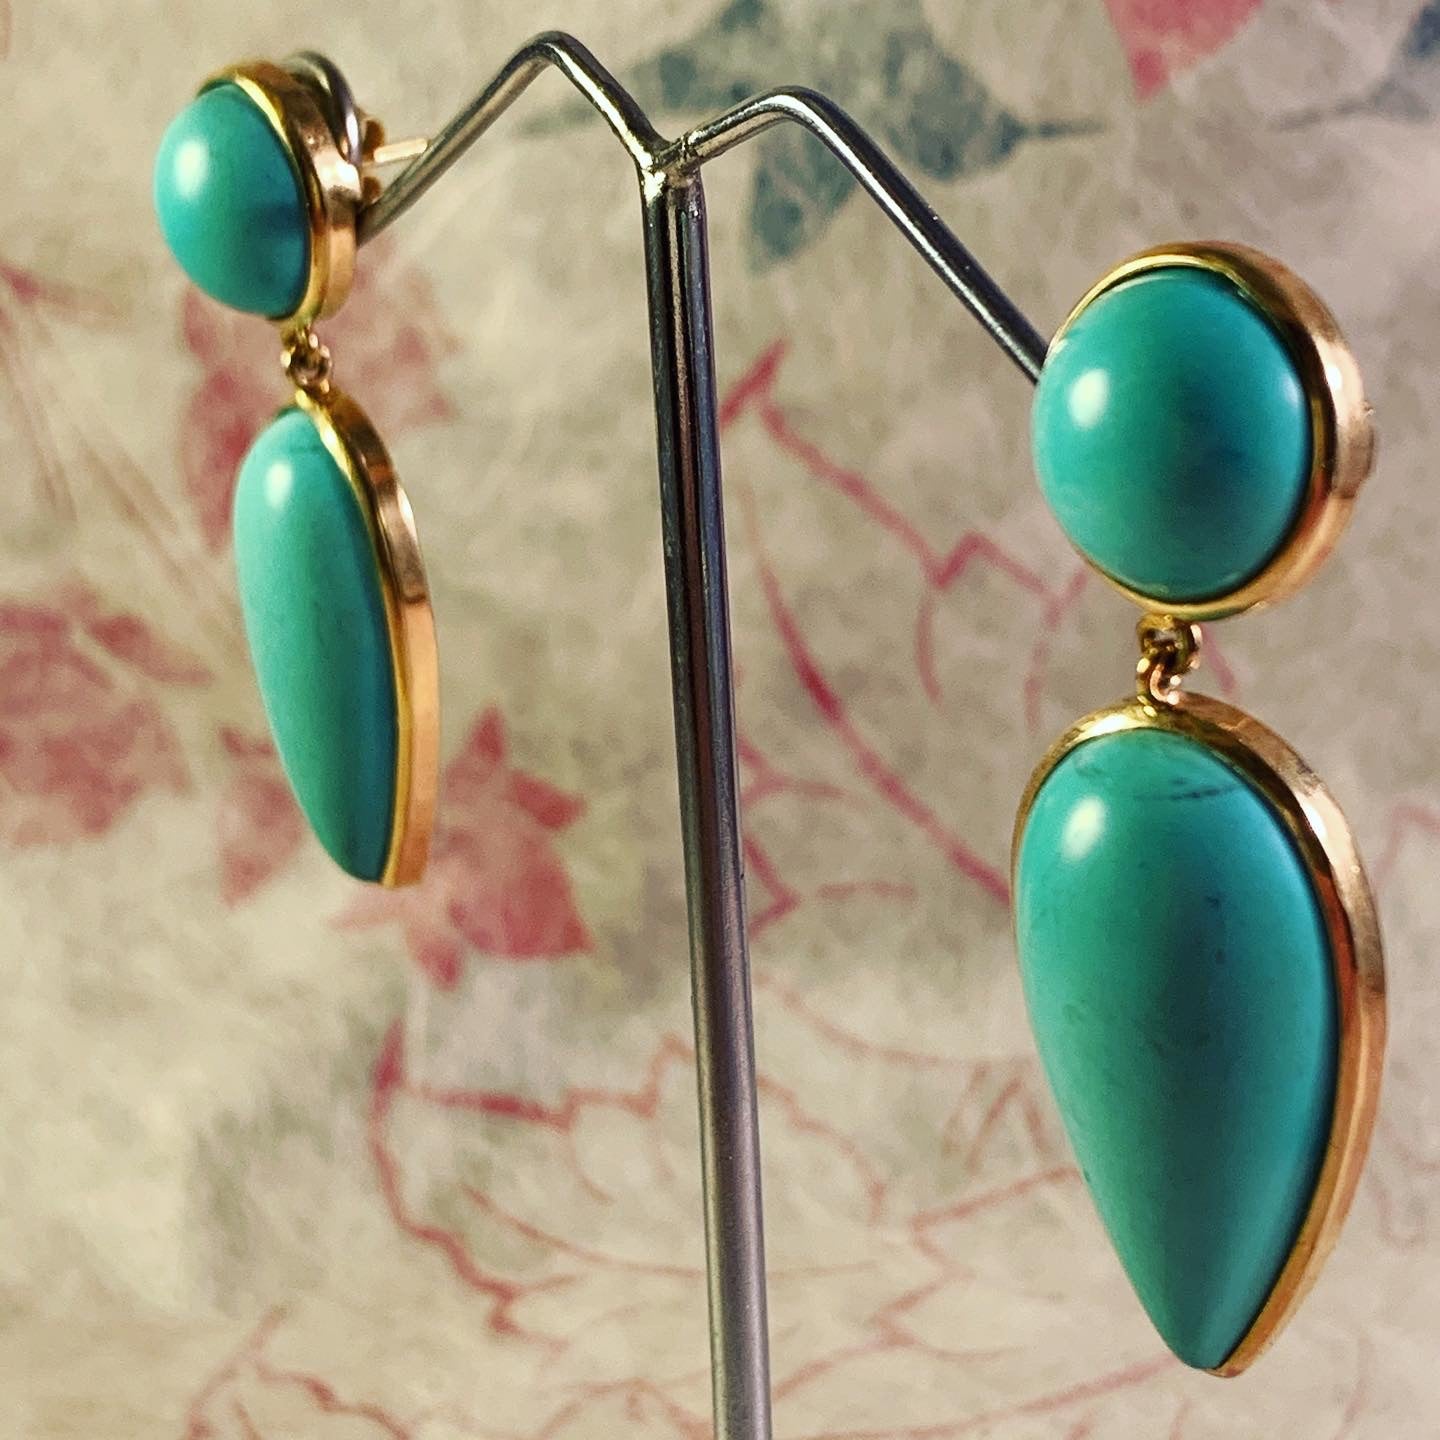 Vintage modern turquoise earrings